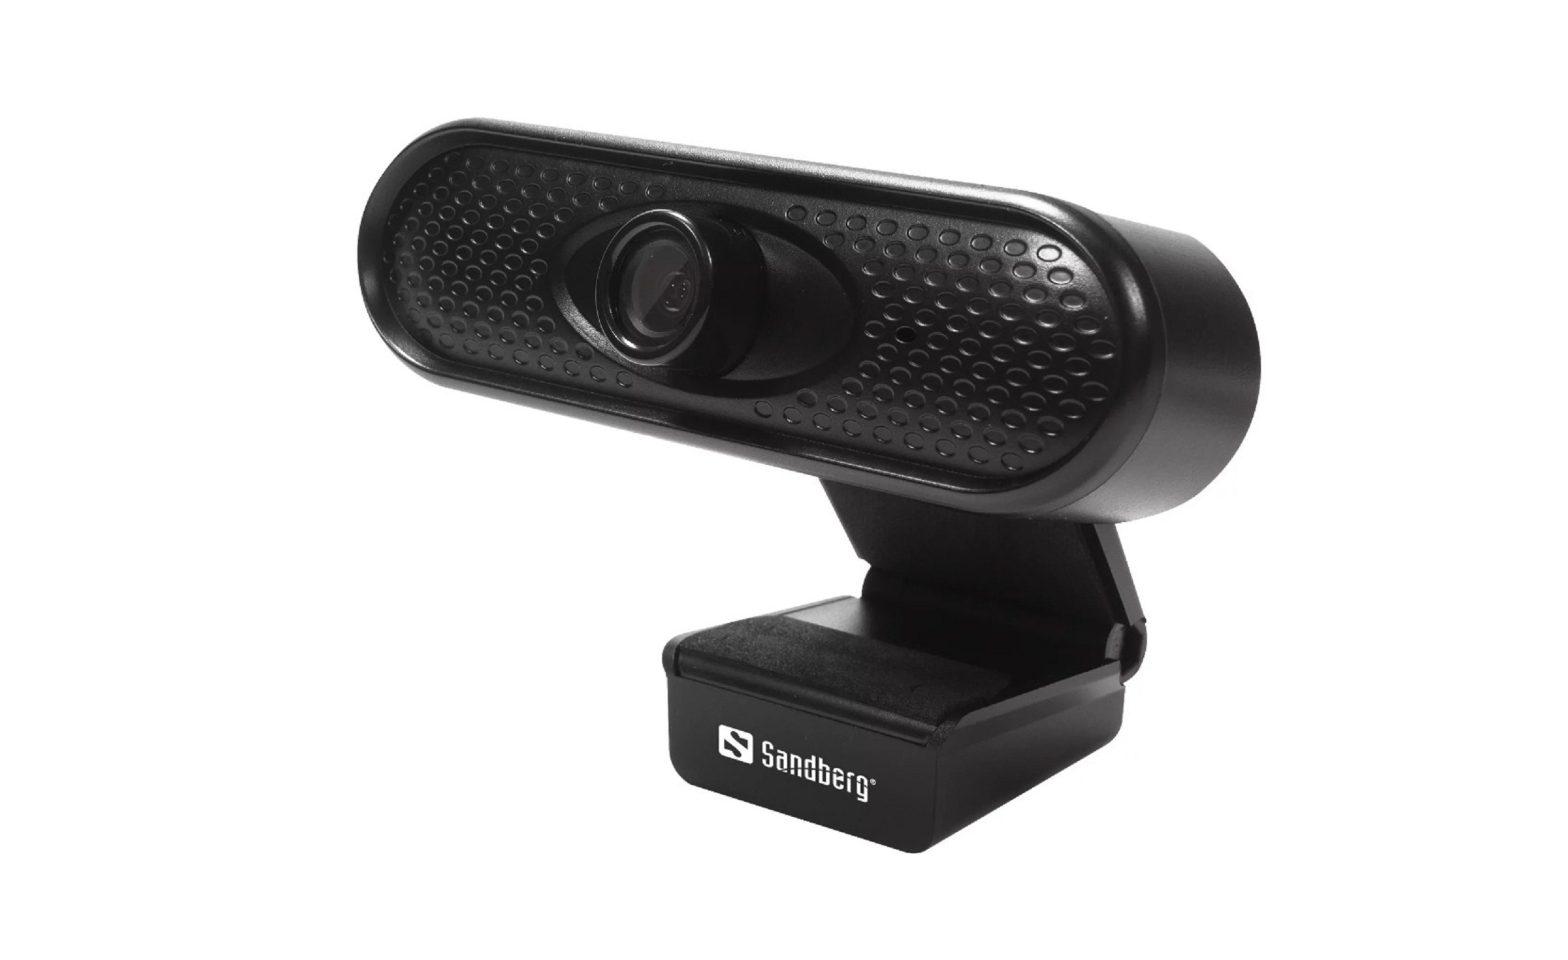 Sandberg USB Webcam 1080P HD User Guide